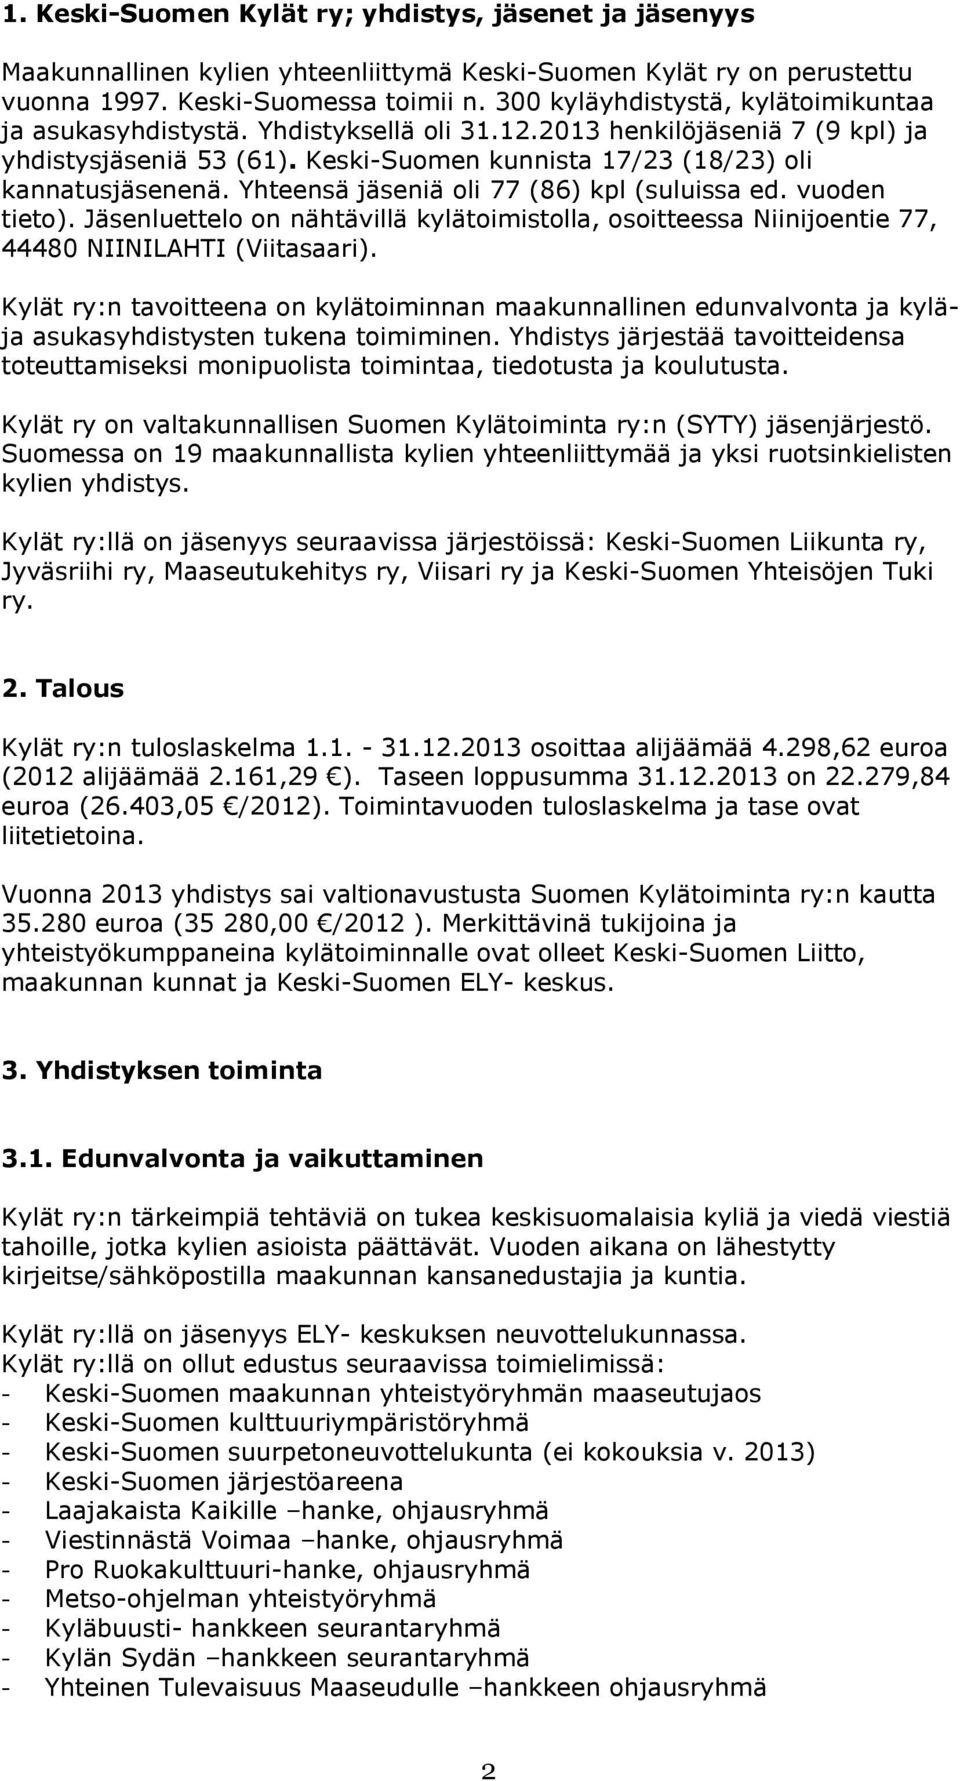 Yhteensä jäseniä oli 77 (86) kpl (suluissa ed. vuoden tieto). Jäsenluettelo on nähtävillä kylätoimistolla, osoitteessa Niinijoentie 77, 44480 NIINILAHTI (Viitasaari).